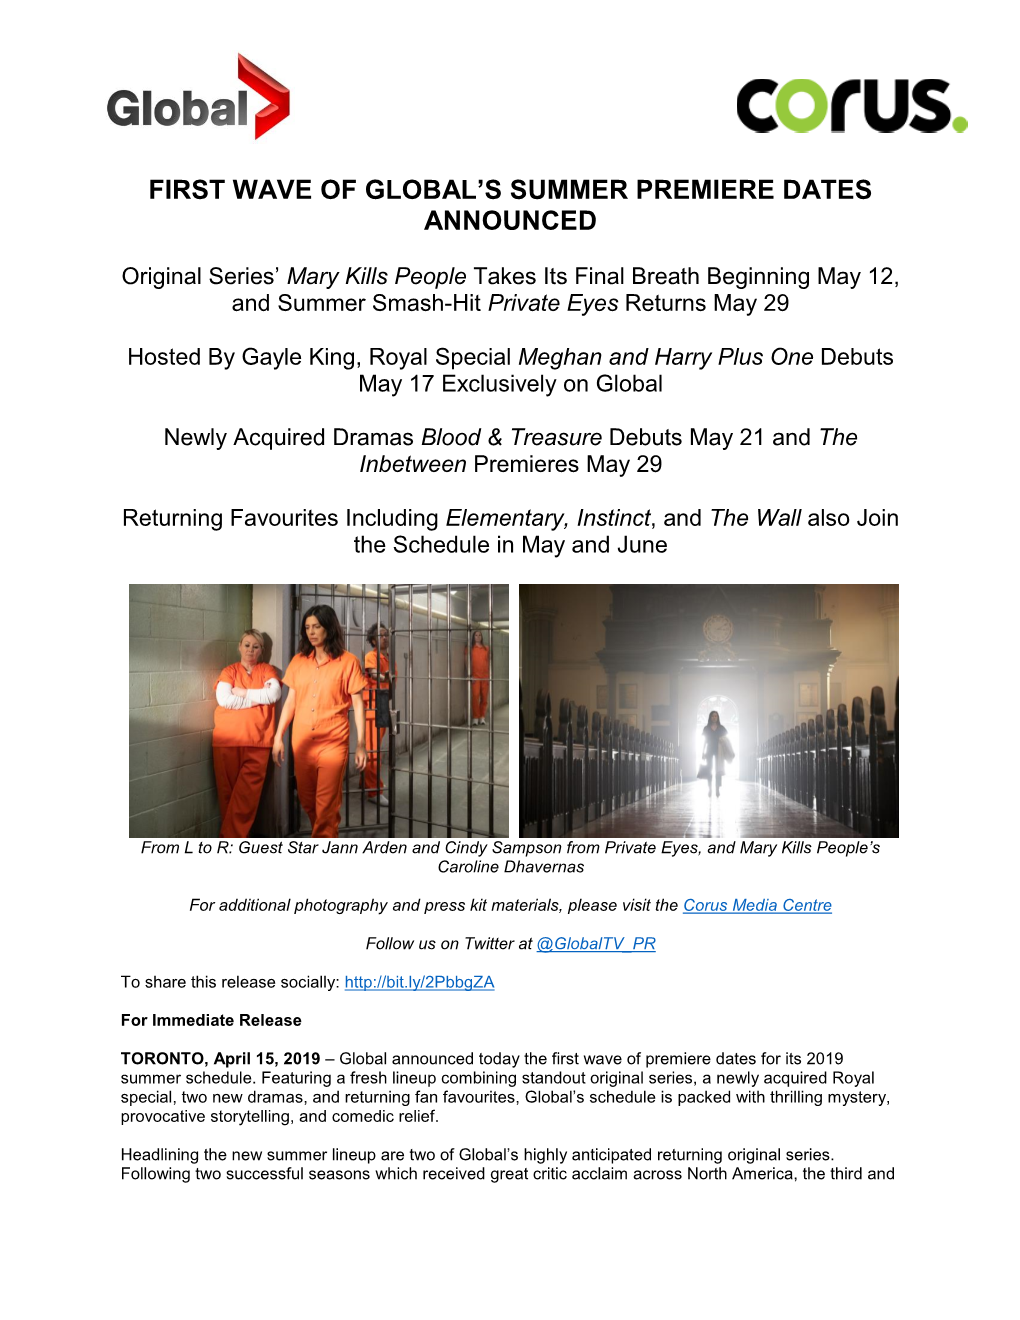 Global-Summer-Schedule Prem-Dates-Wave1 FINAL1